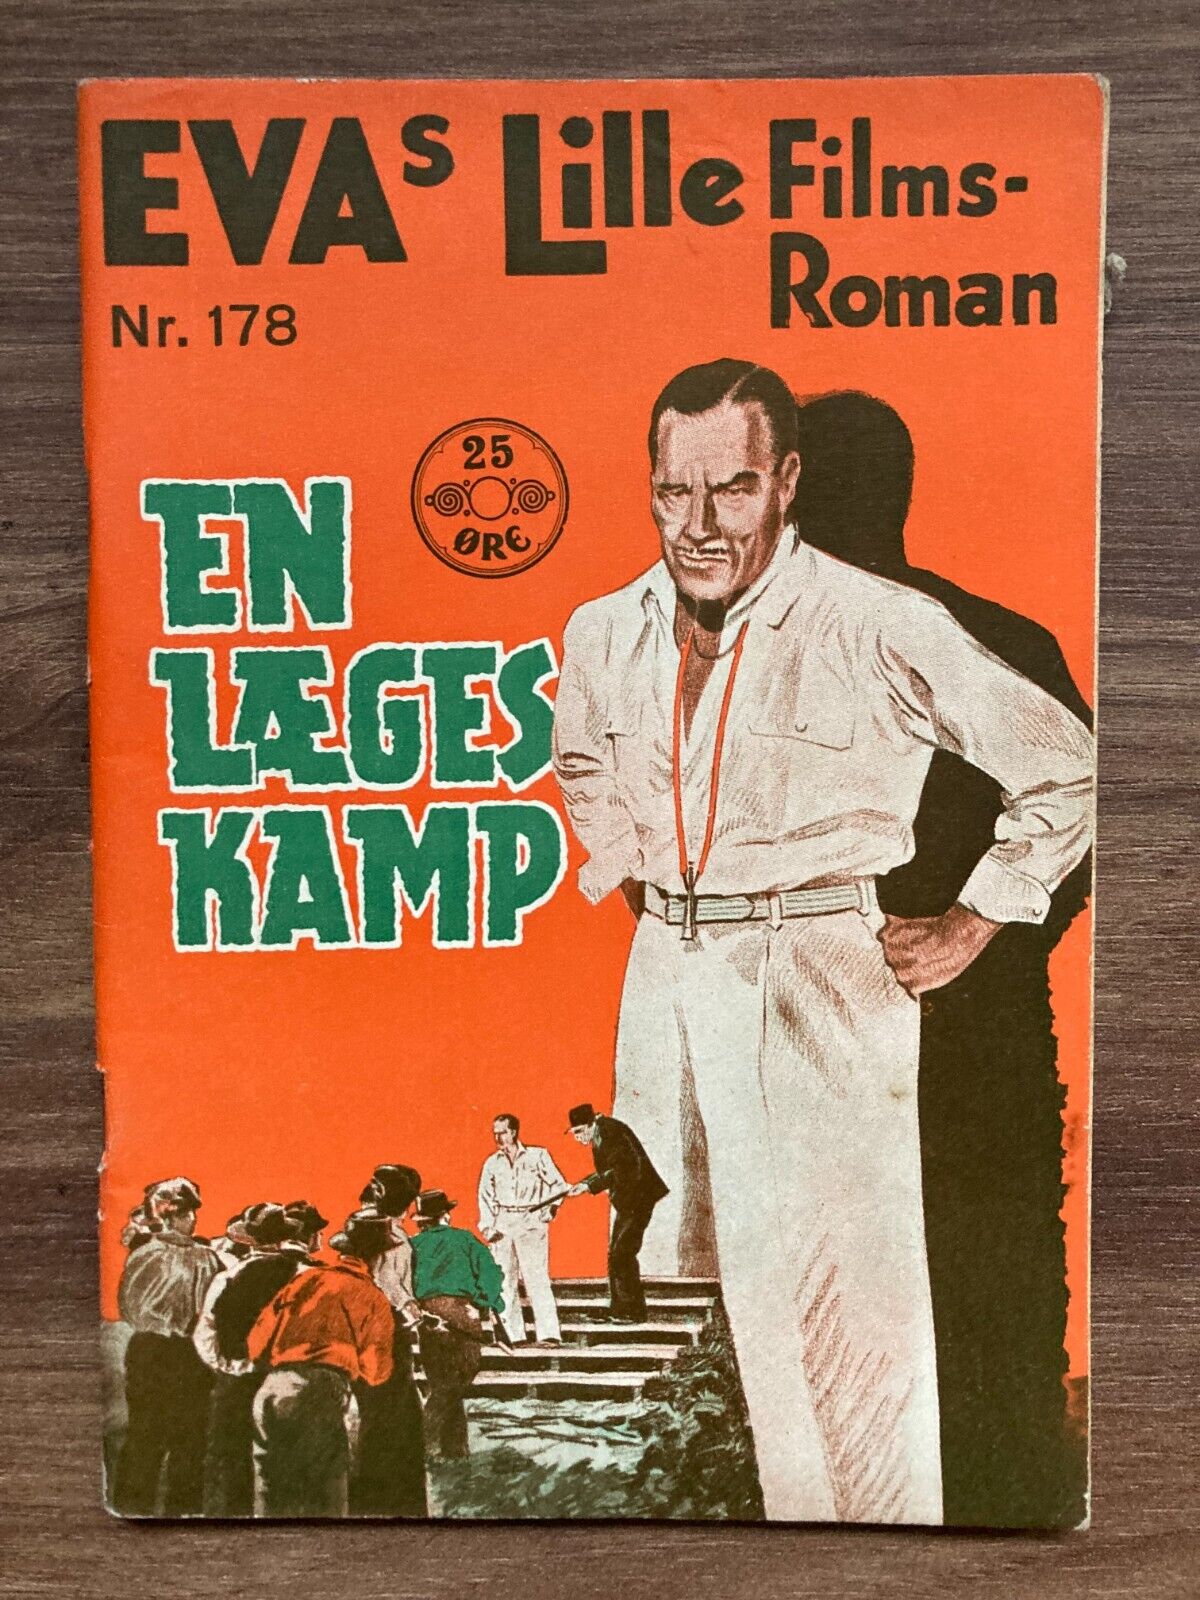 The Strange Case of Dr. Meade Jack Holt 1938 Danish Novel EVAs Lille Films-Roman